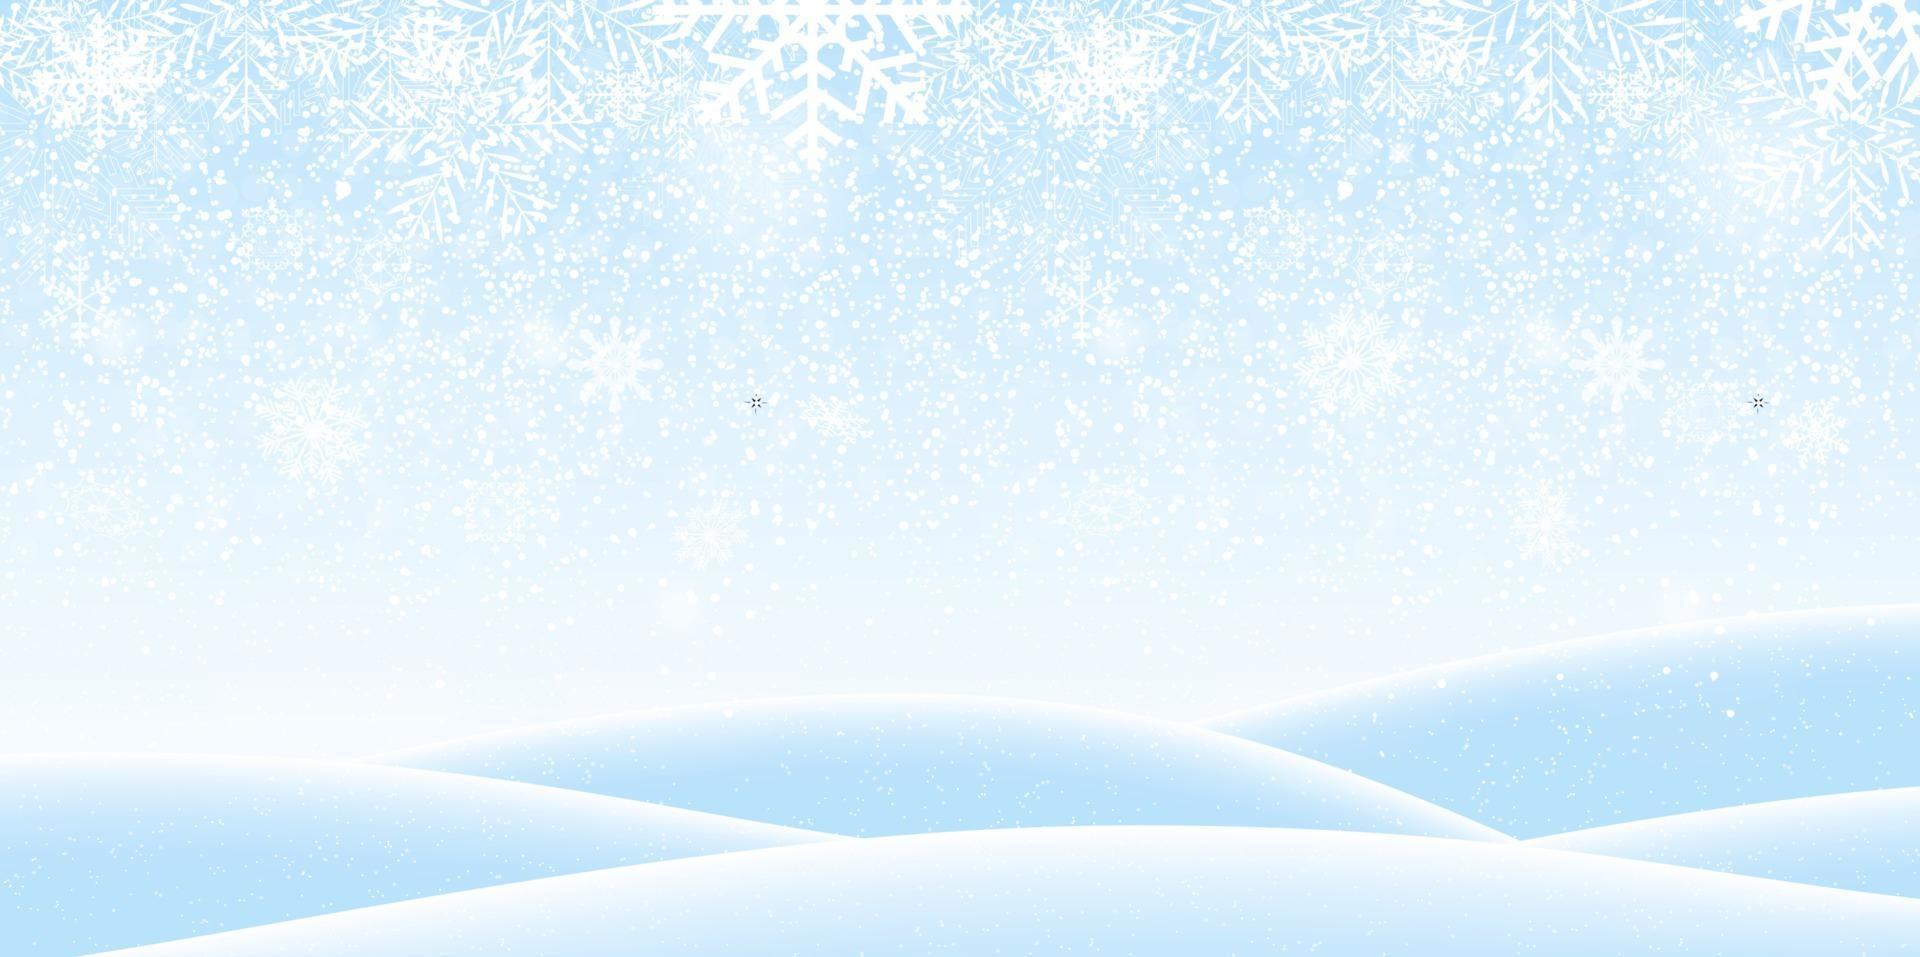 sfondo invernale naturalistico colorato con neve che cade su derive. illustrazione vettoriale